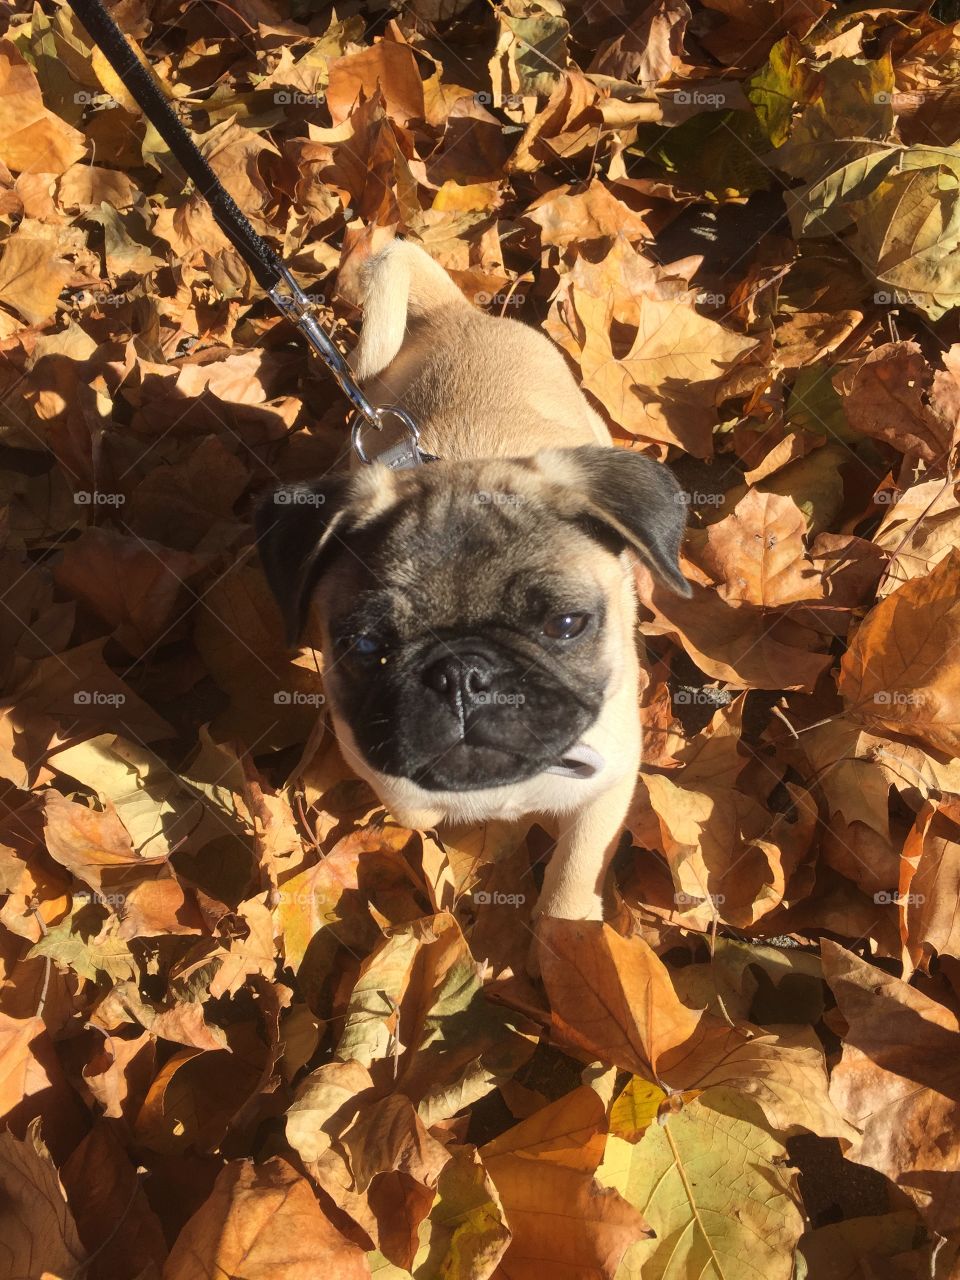 Pug in Leaves 